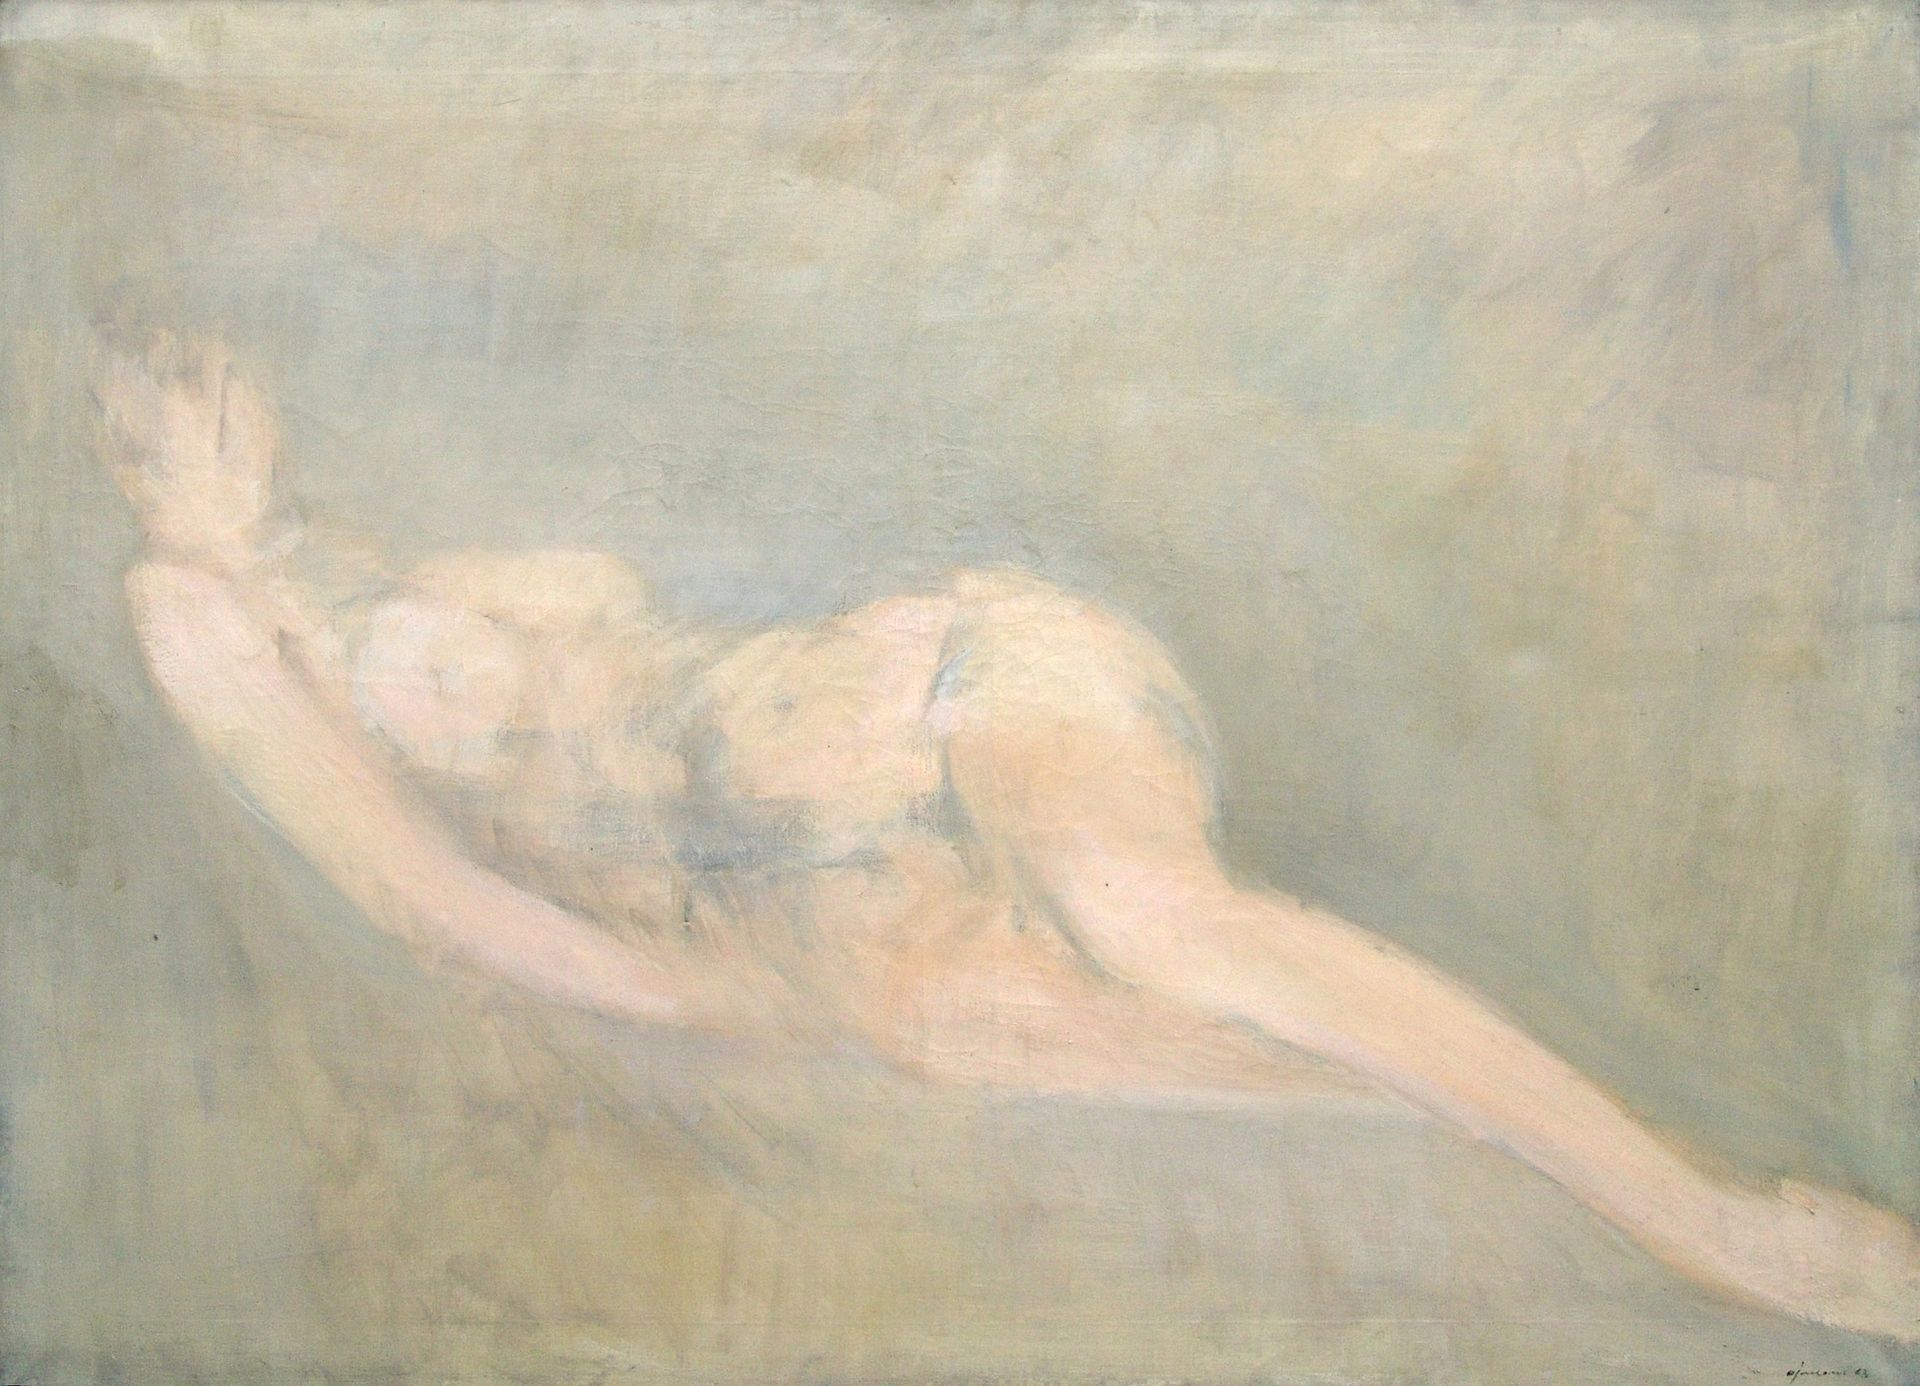 GIUSEPPE AJMONE Donna che dorme, 1963, olio su tela, 98x130 cm

firma dell'artis&hellip;